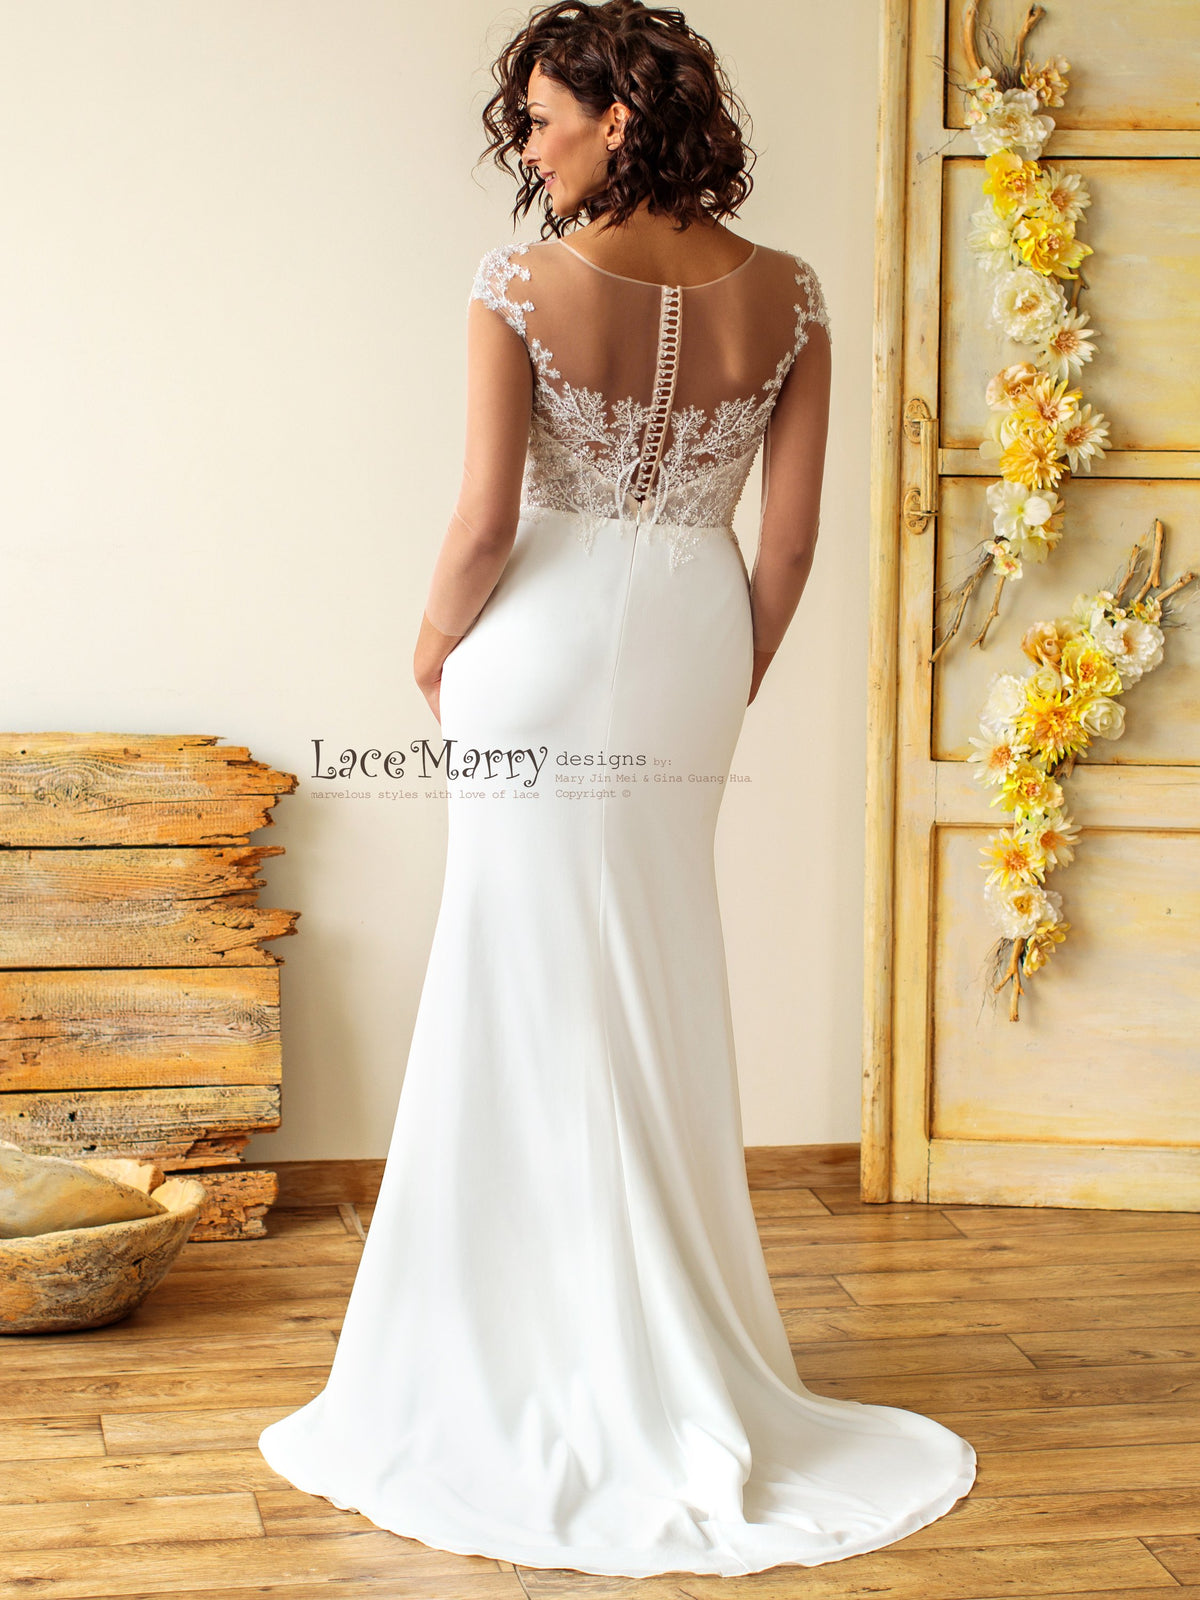 Beautiful Illusion Back Wedding Dress